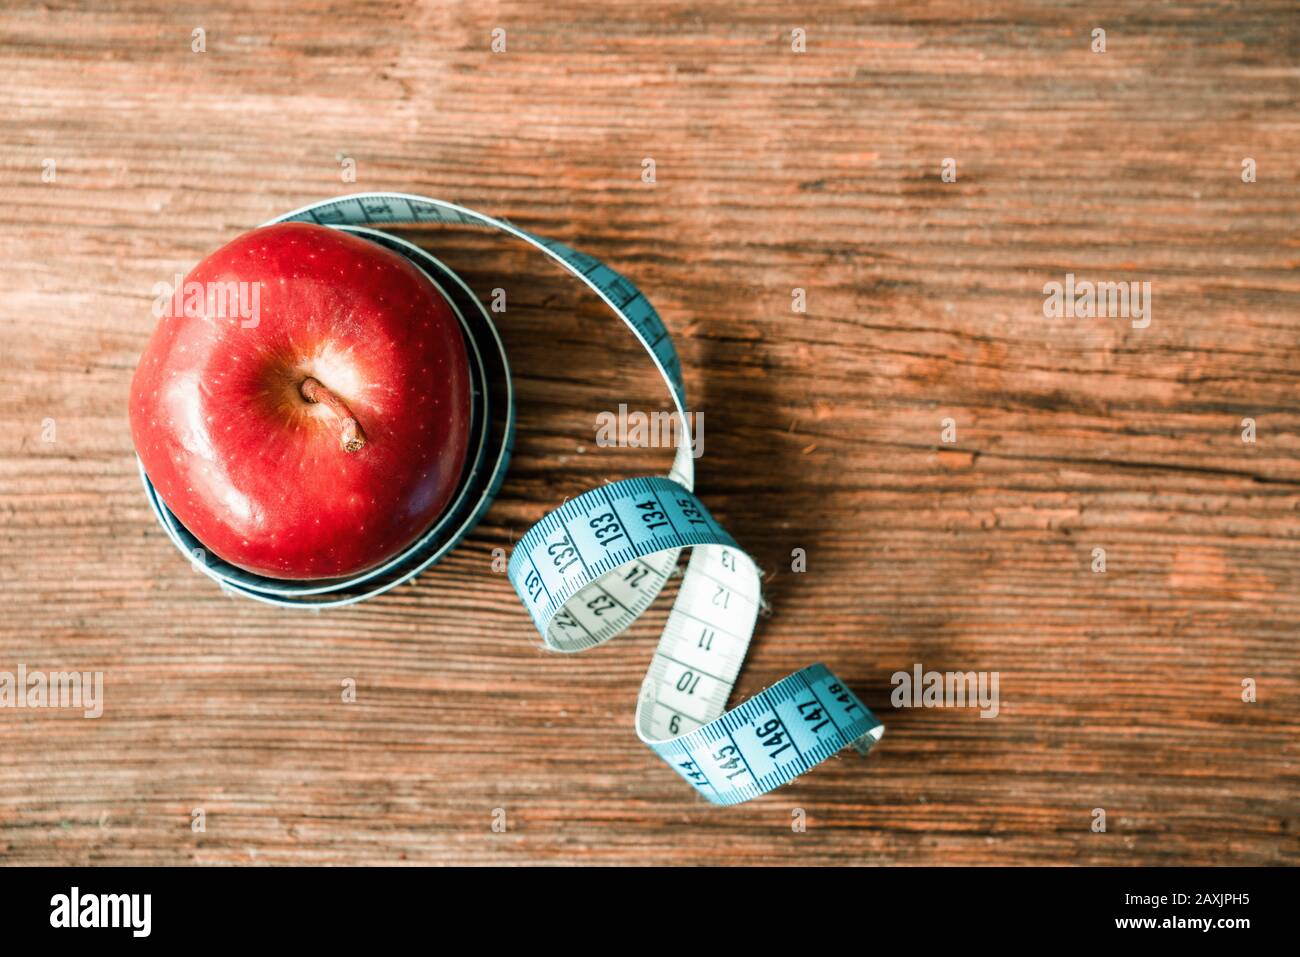 mela rossa isolata avvolta con nastro adesivo su fondo bianco. Dieta e sano concetto di vita Foto Stock